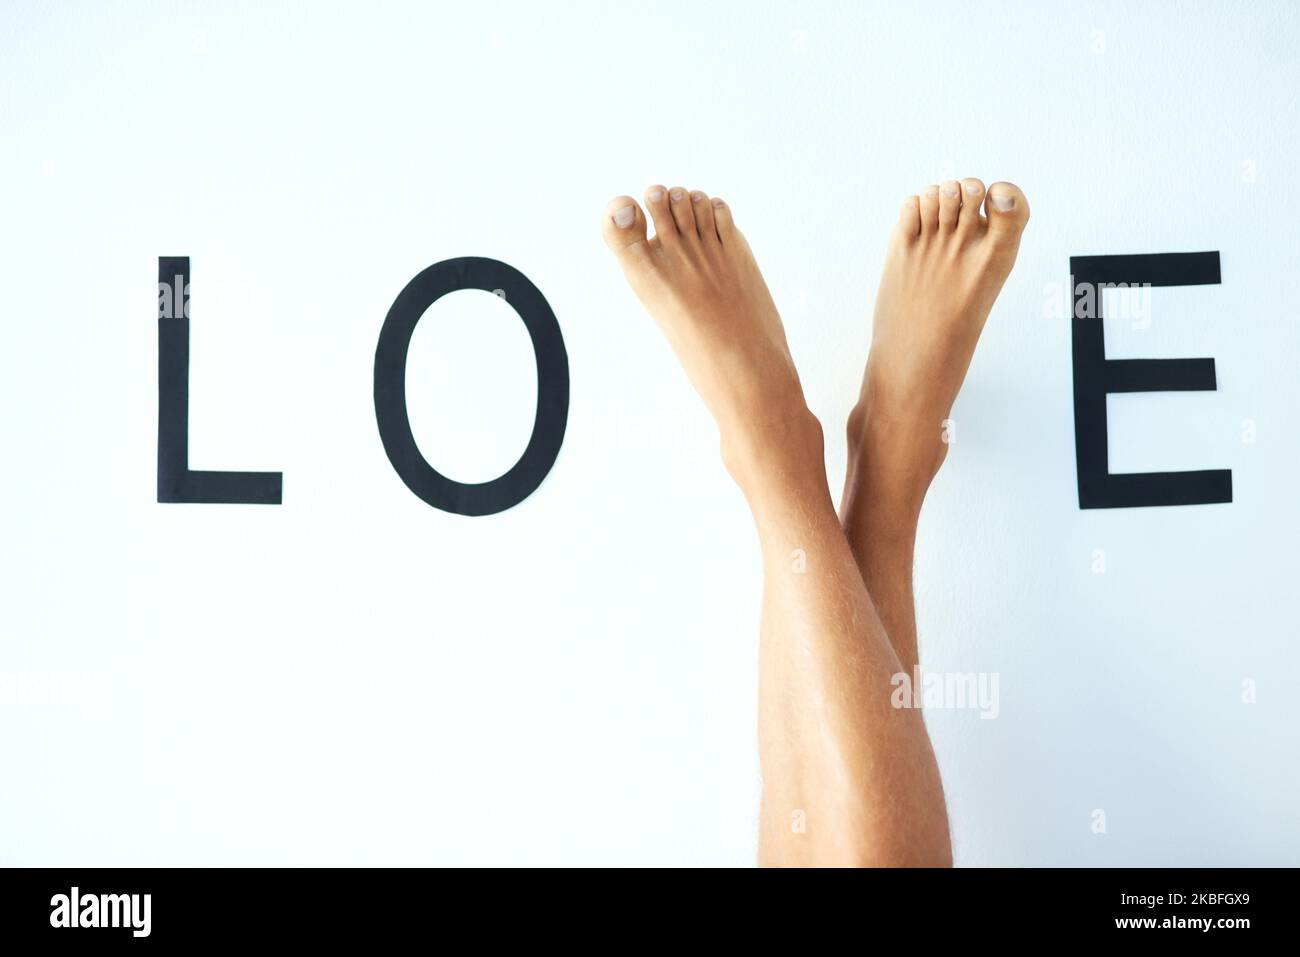 Wandelt auf dem Pfad der Liebe. Studioaufnahme eines nicht erkennbaren mannes kreuzte die Beine, wobei seine Füße den Buchstaben V im Wort LIEBE bildeten. Stockfoto